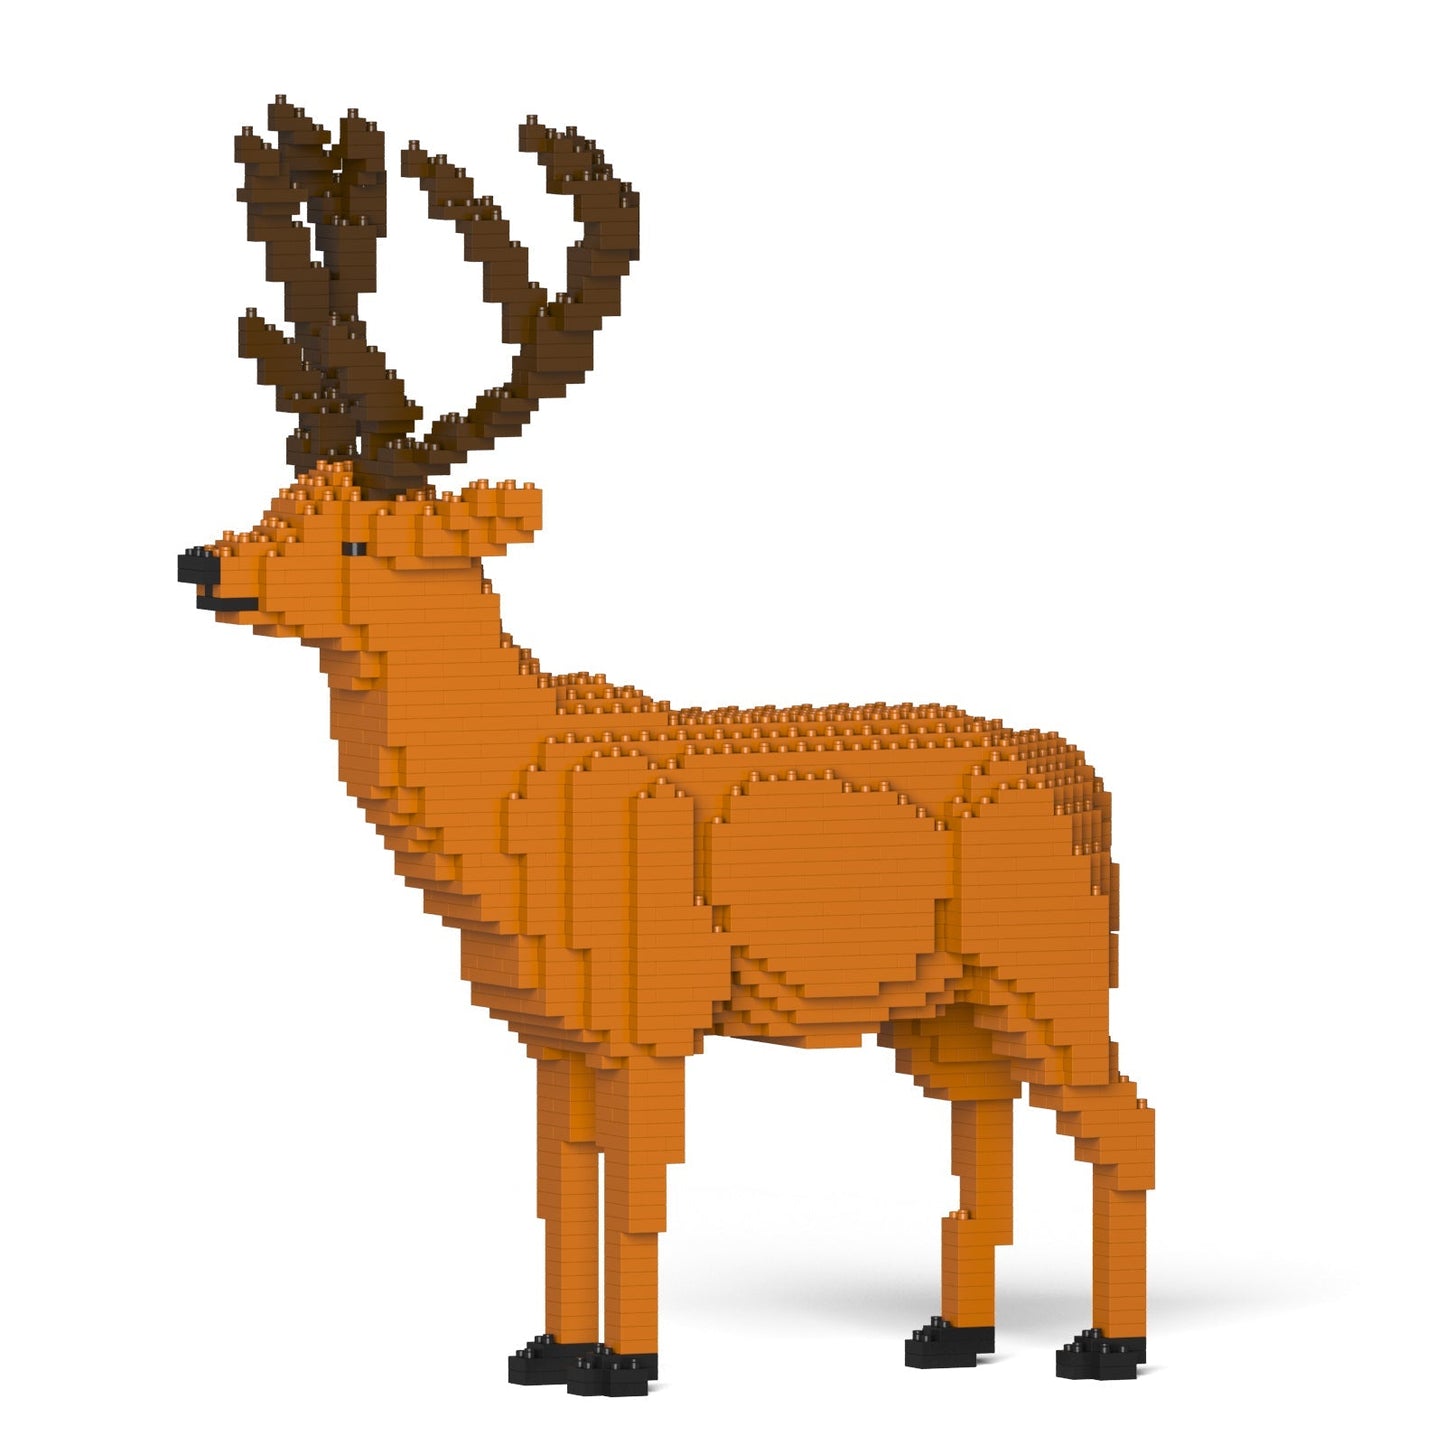 Deer 01